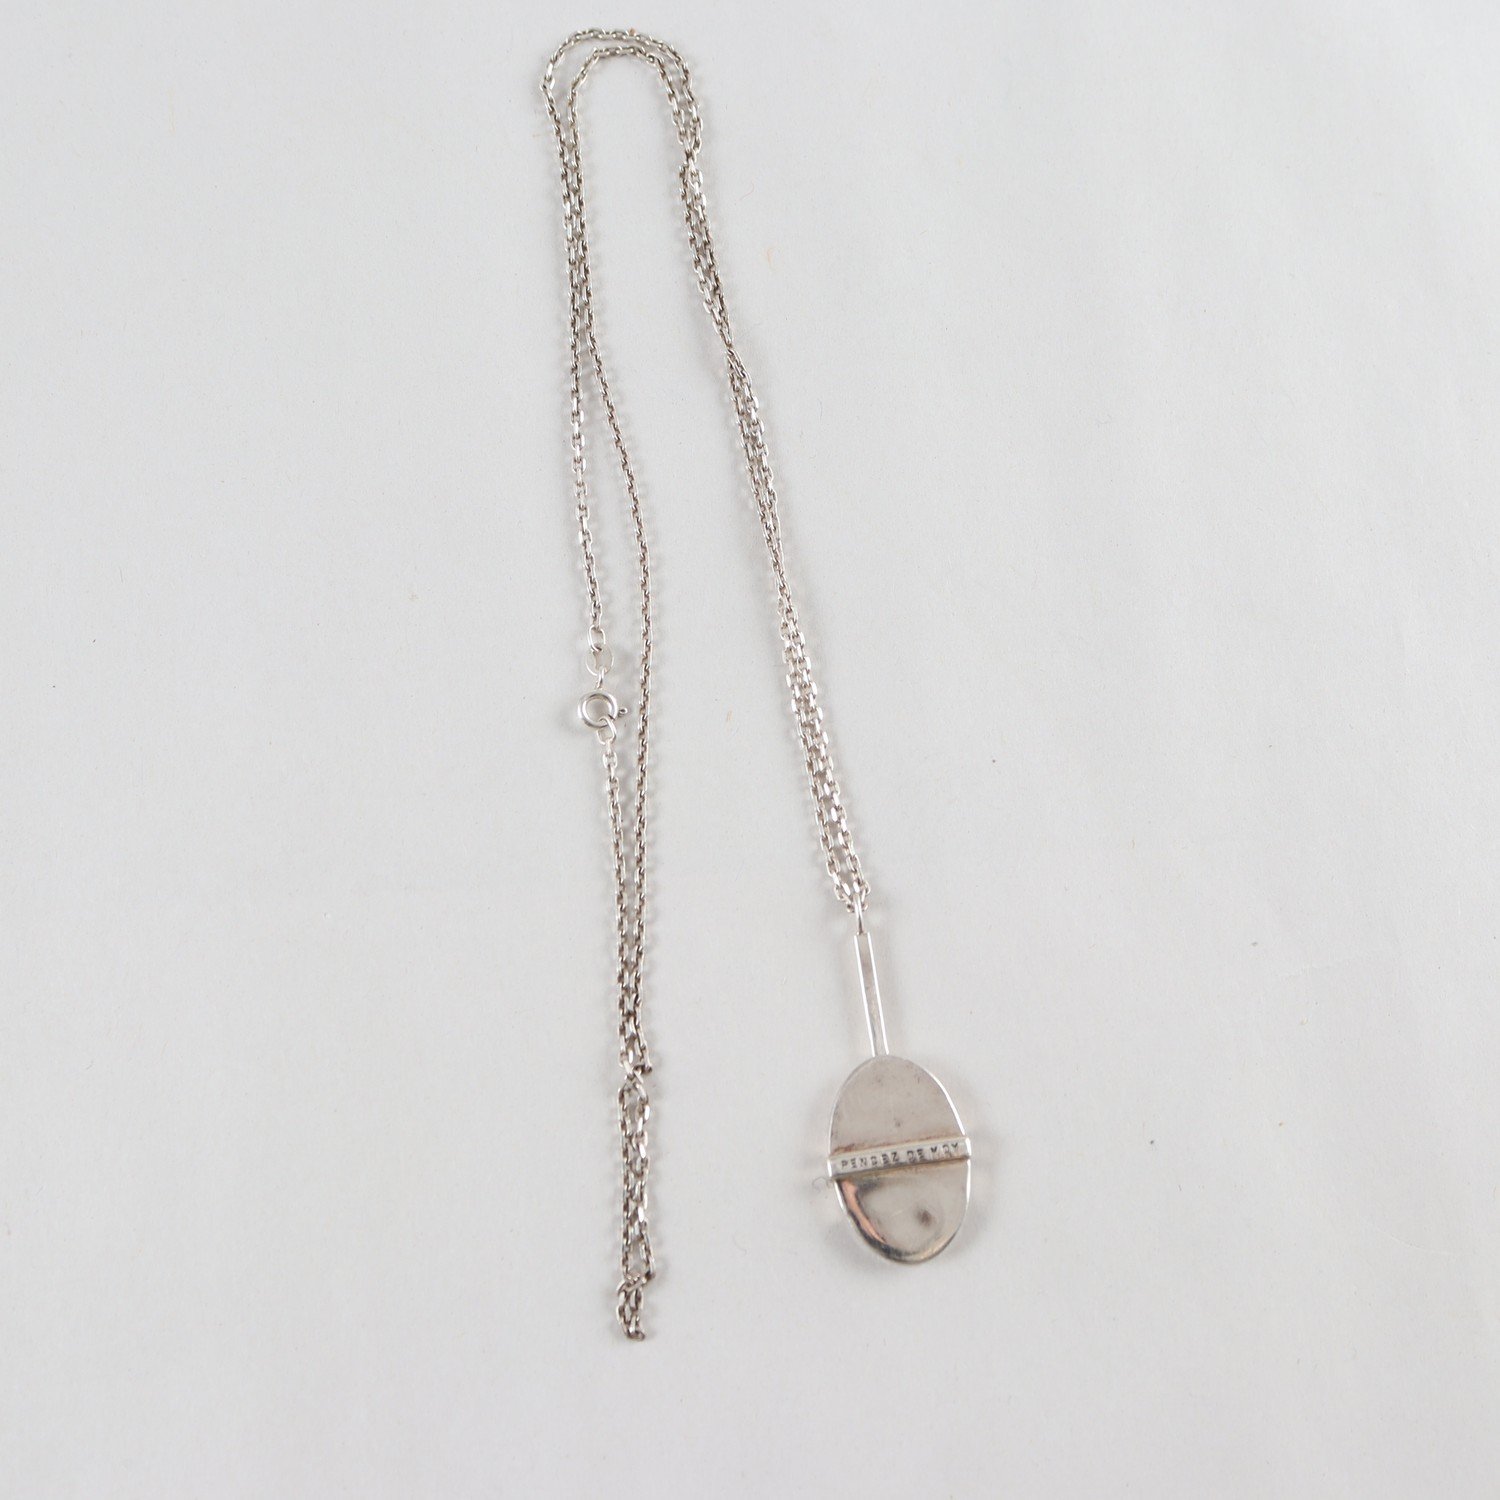 Halsband, silver 925, Pencez de Moy, Efva Attling, vikt: 18,8 g